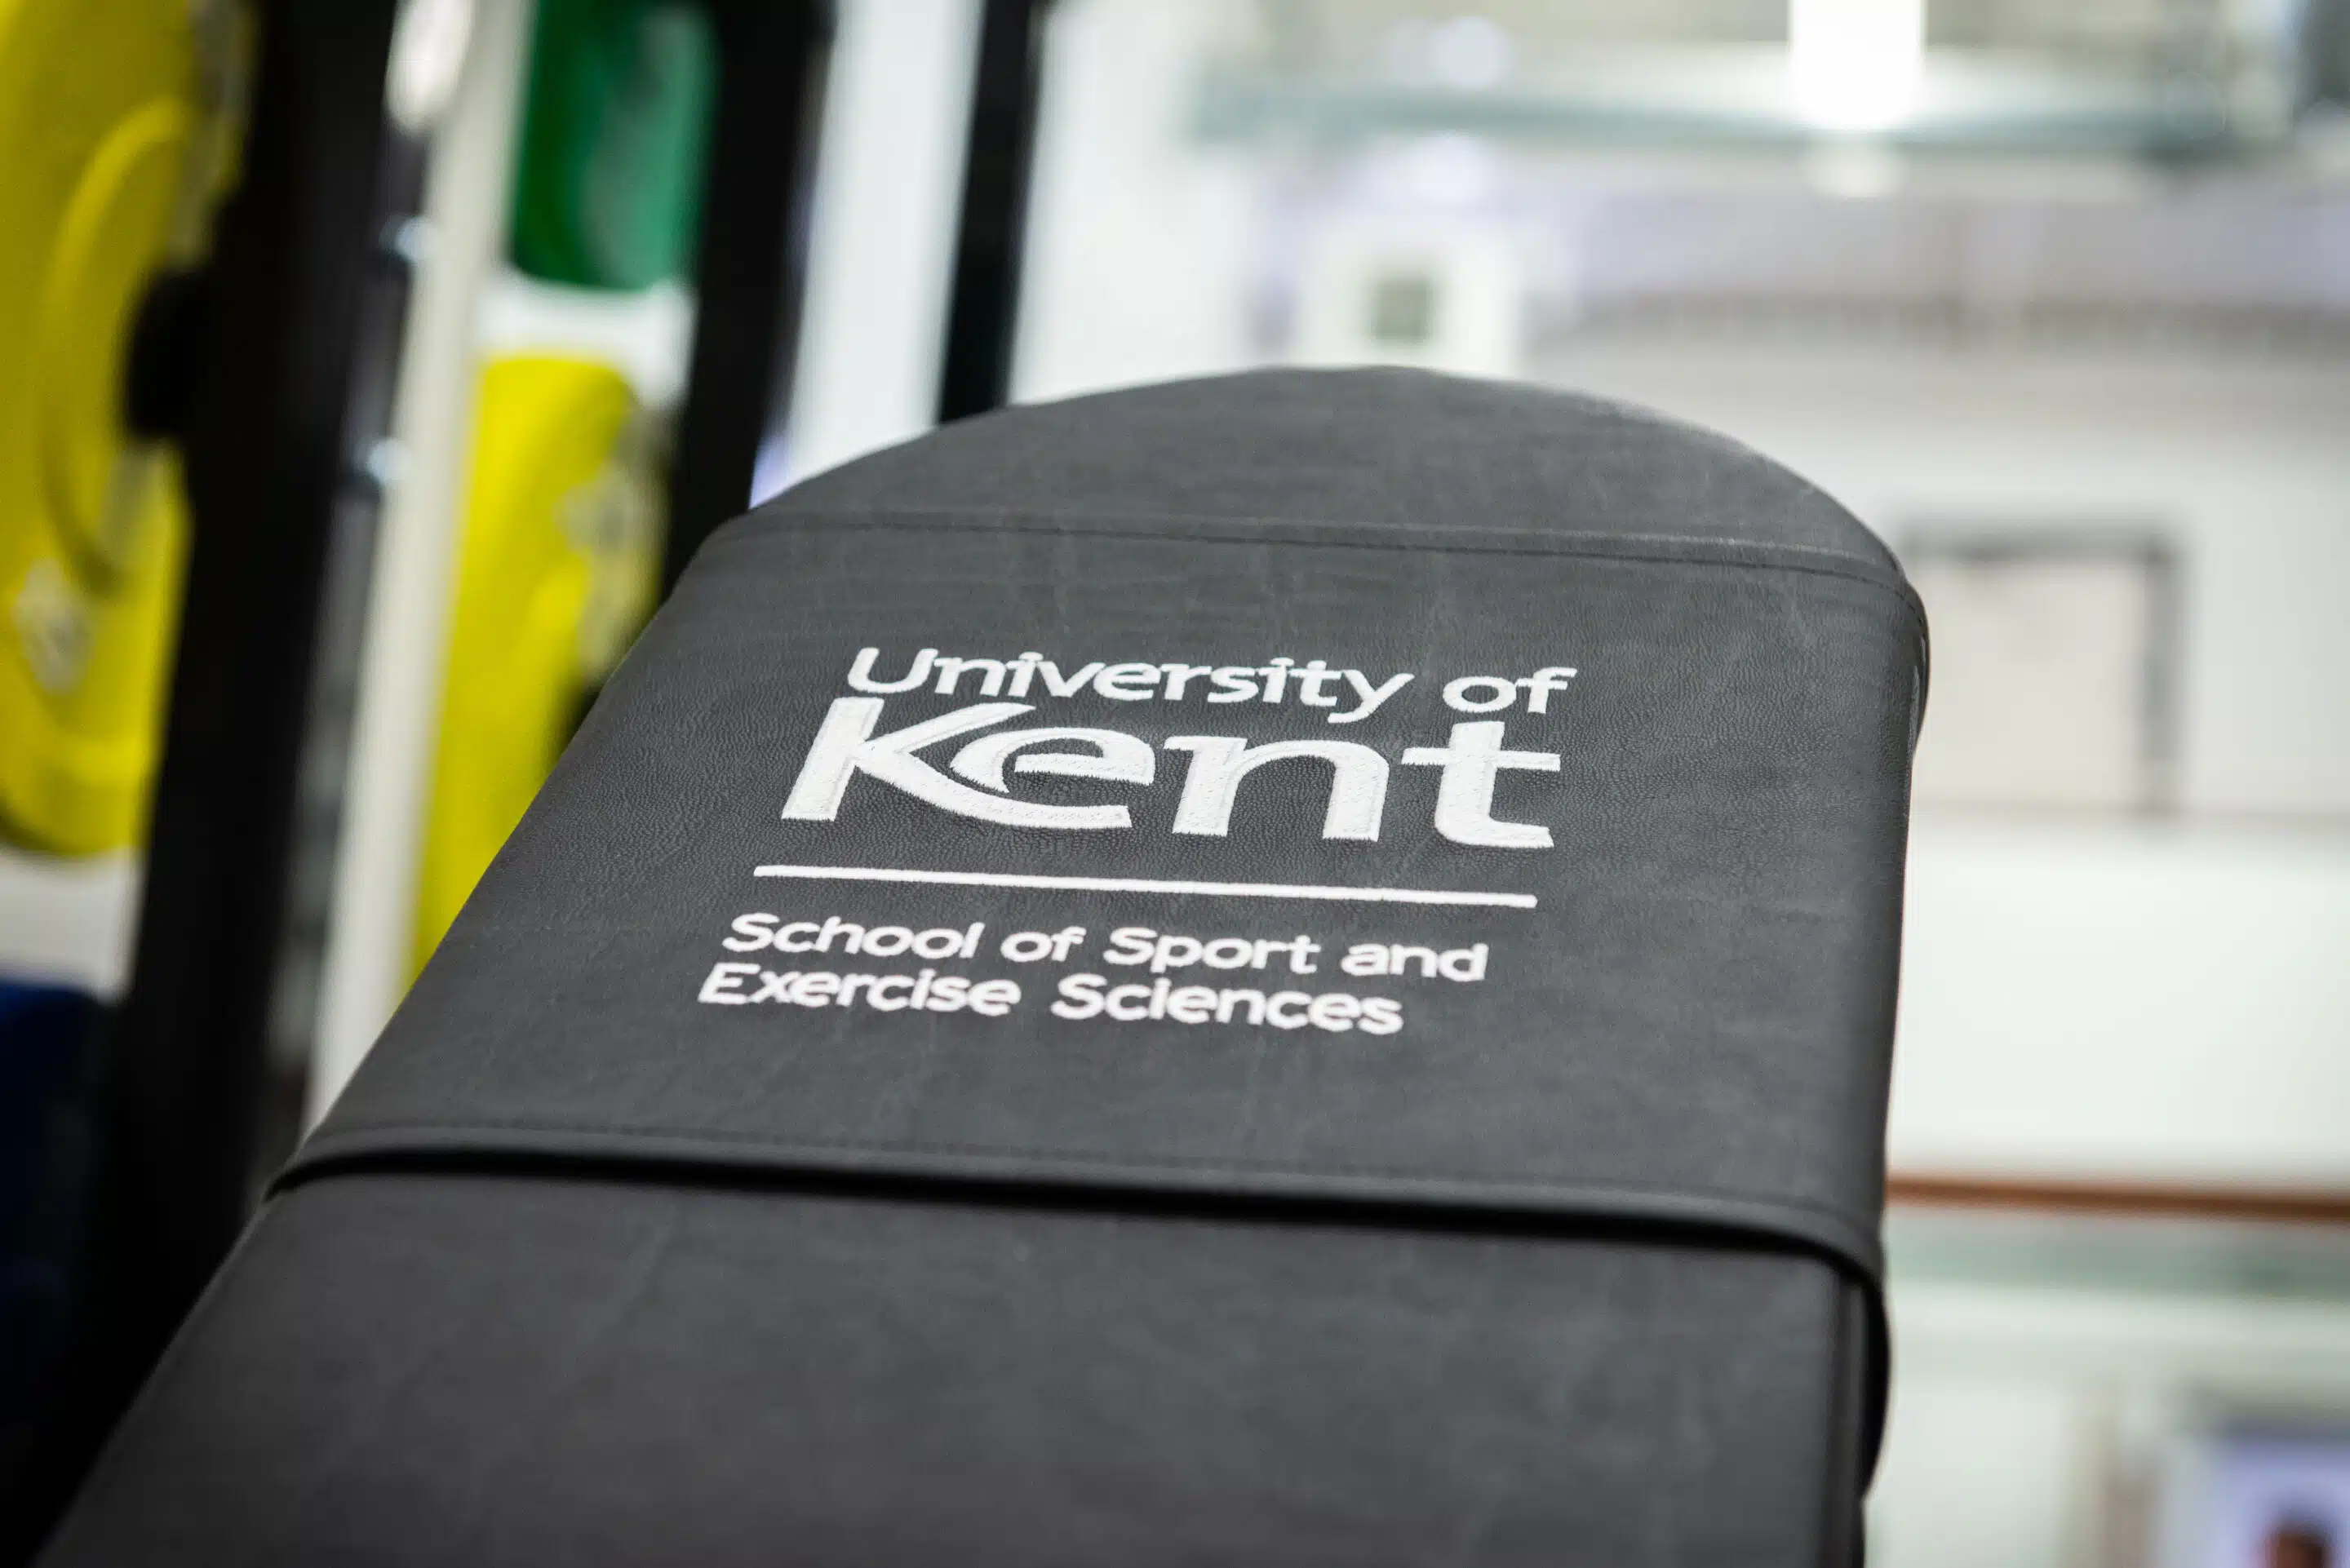 University Of Kent 26 1 scaled